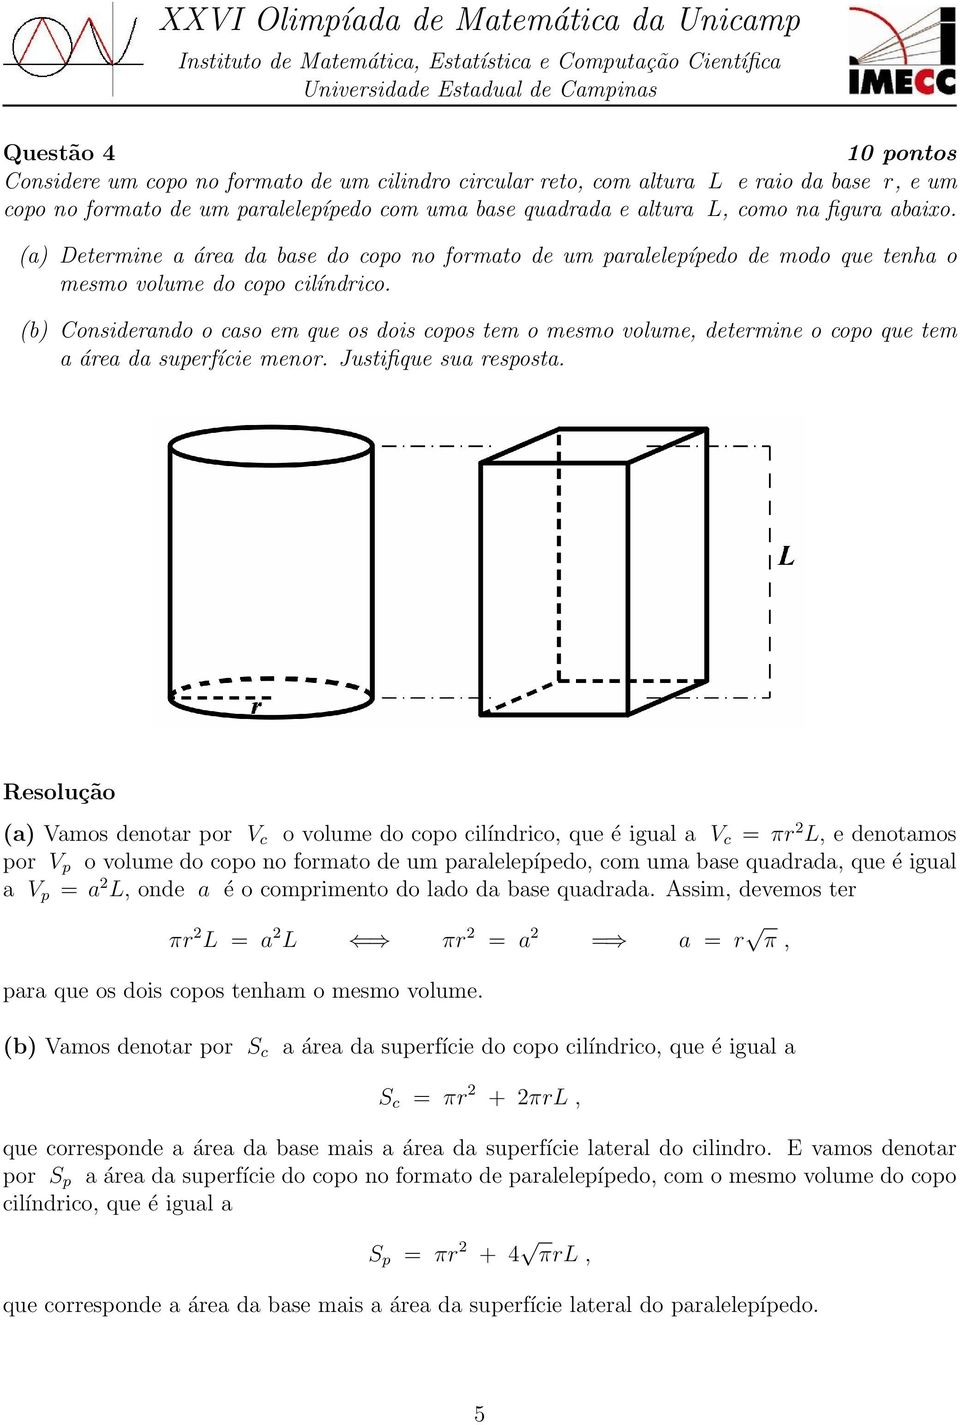 (b) Considerando o caso em que os dois copos tem o mesmo volume, determine o copo que tem a área da superfície menor. Justifique sua resposta.